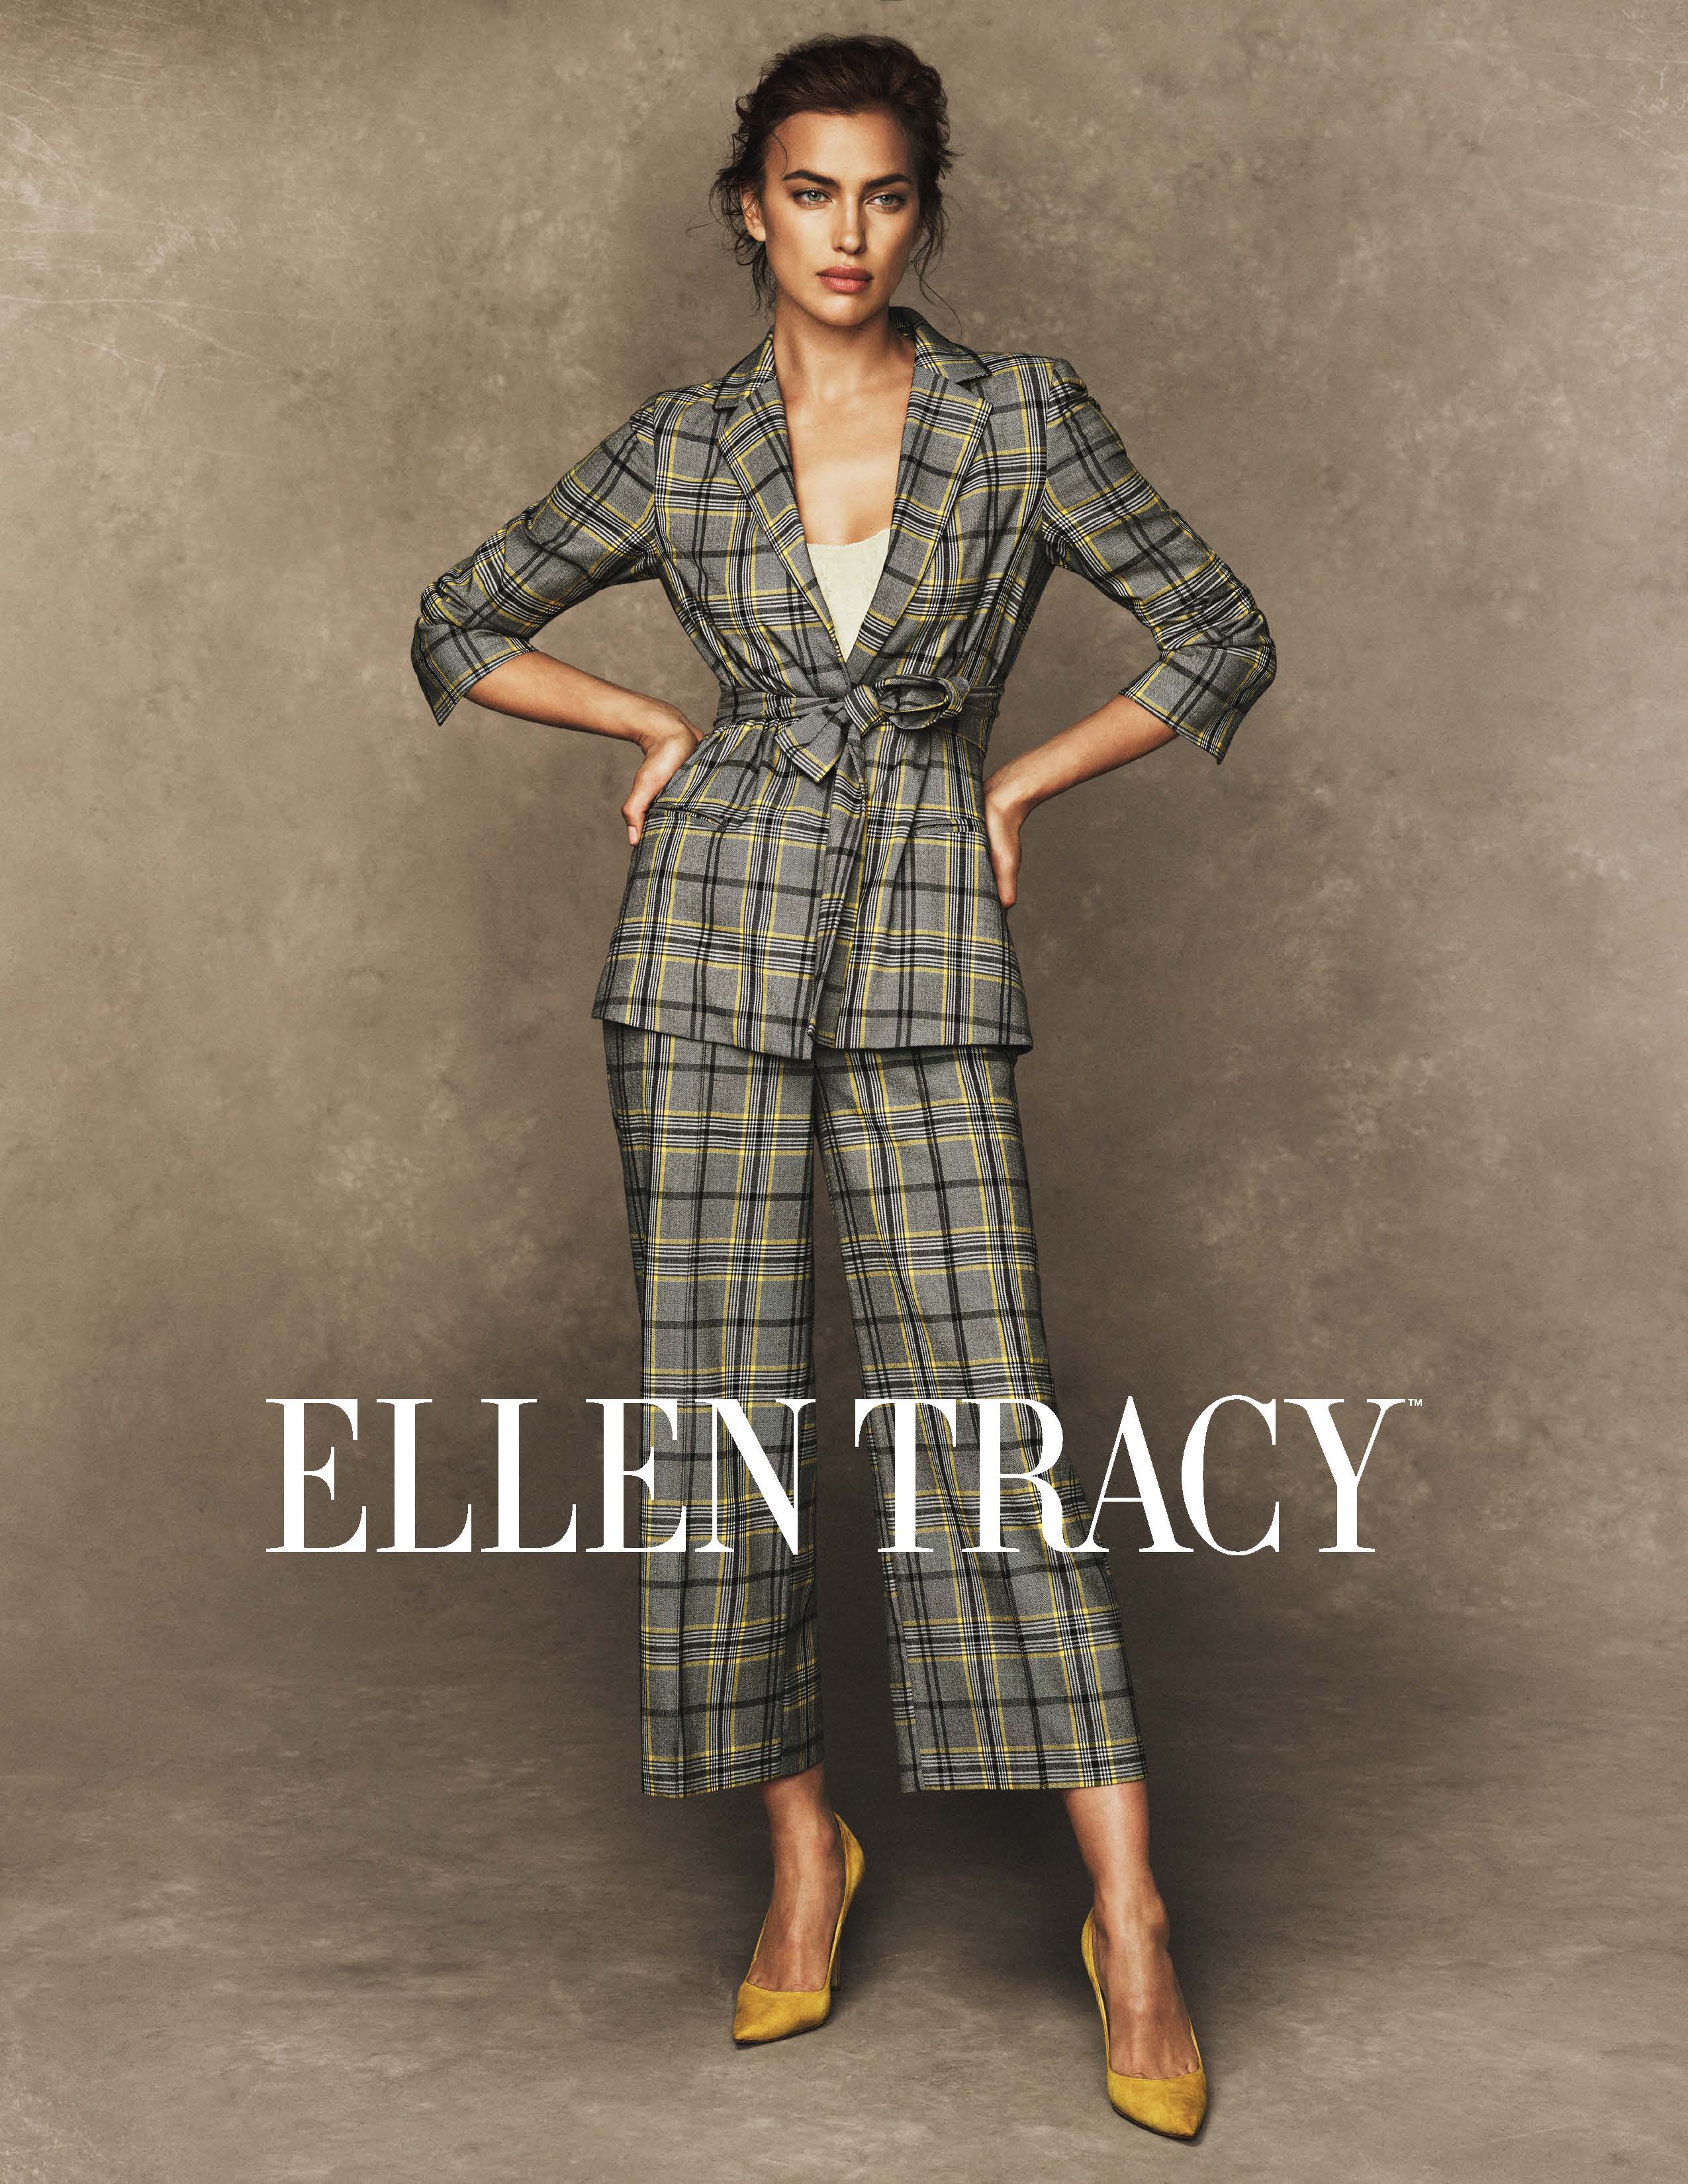 Ellen Tracy Fall Campaign